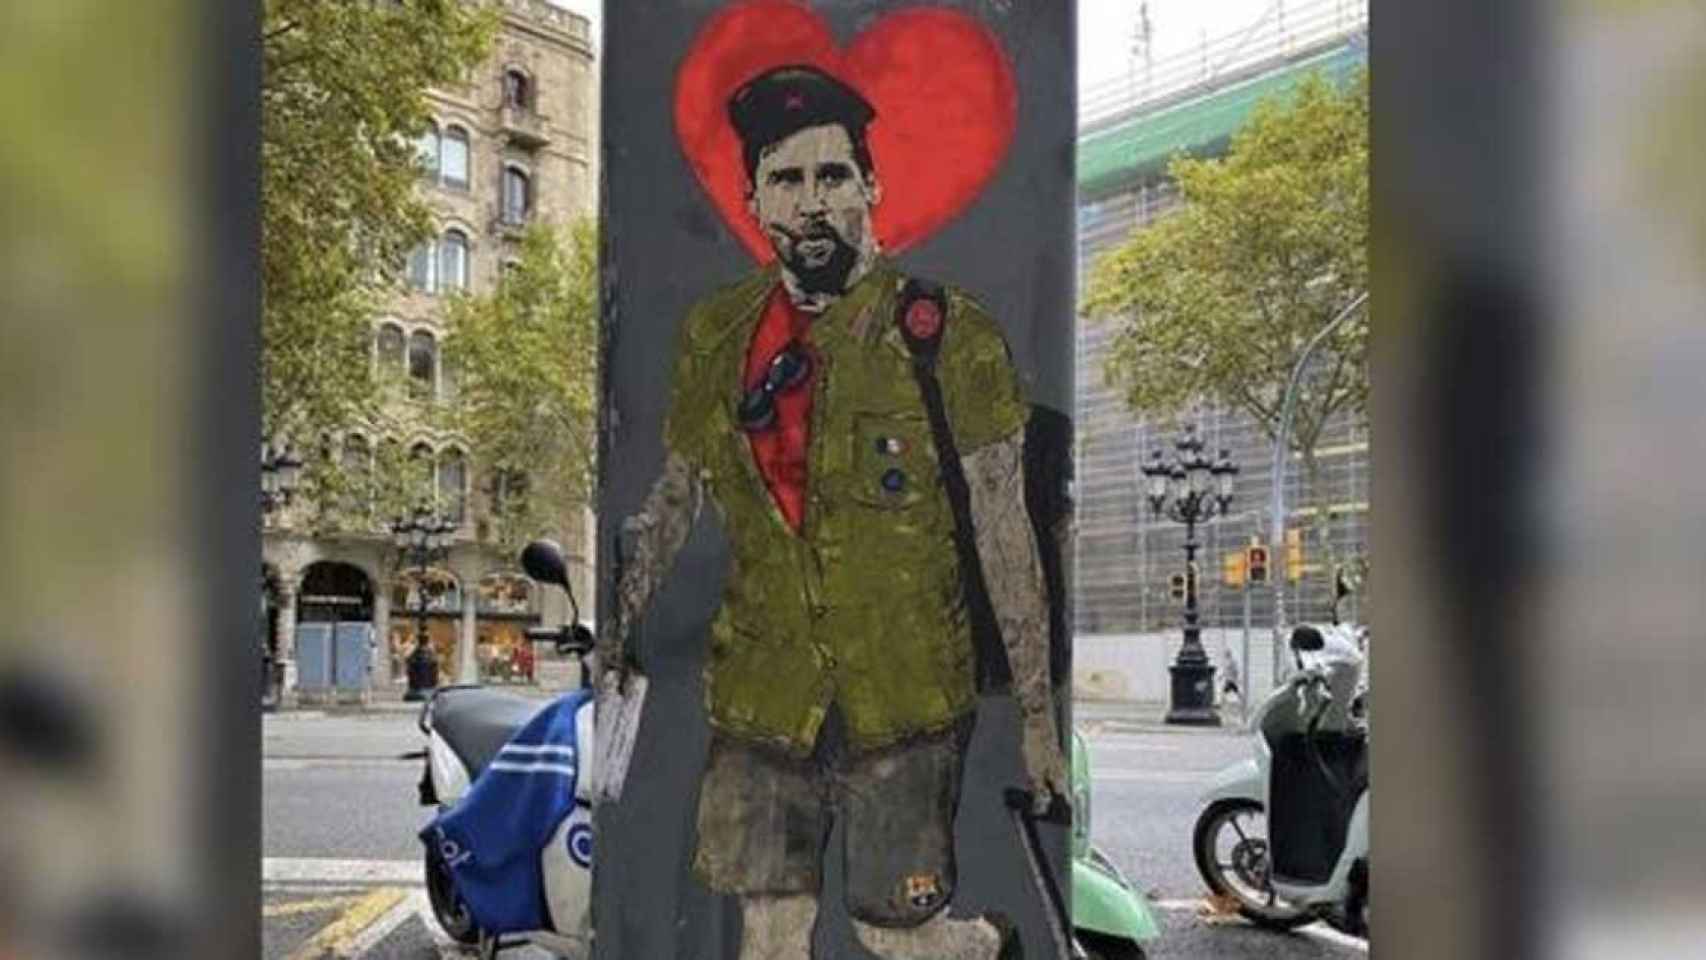 Grafiti de Messi hecho por TVBoy en la plaza Catalunya de Barcelona / INSTAGRAM